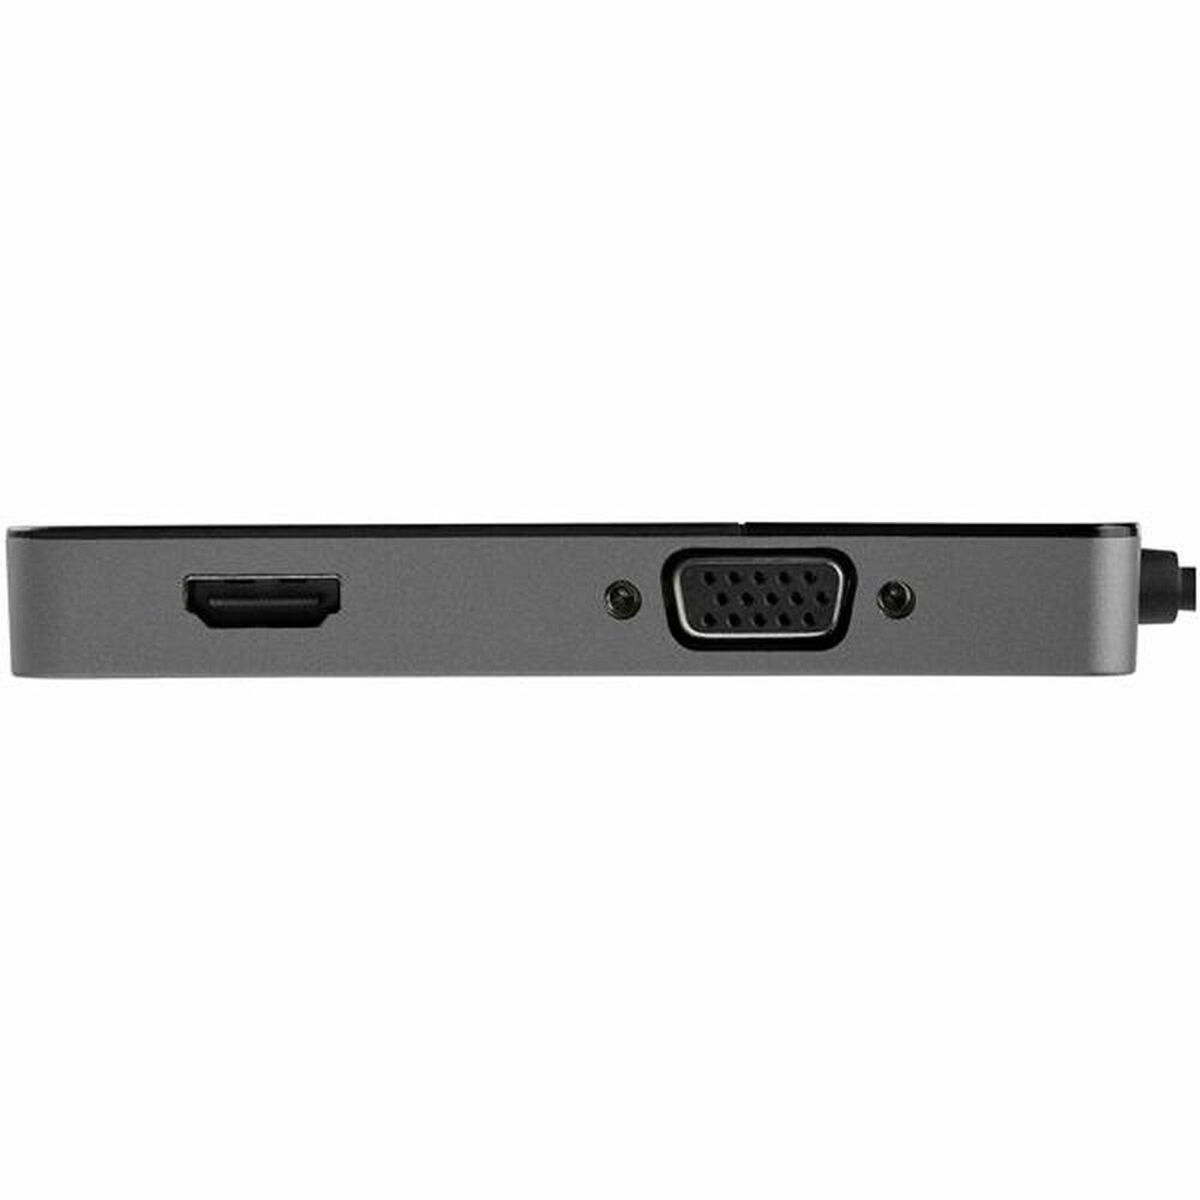 USB to VGA/HDMI Adapter Startech USB32HDVGA Black 4K Ultra HD